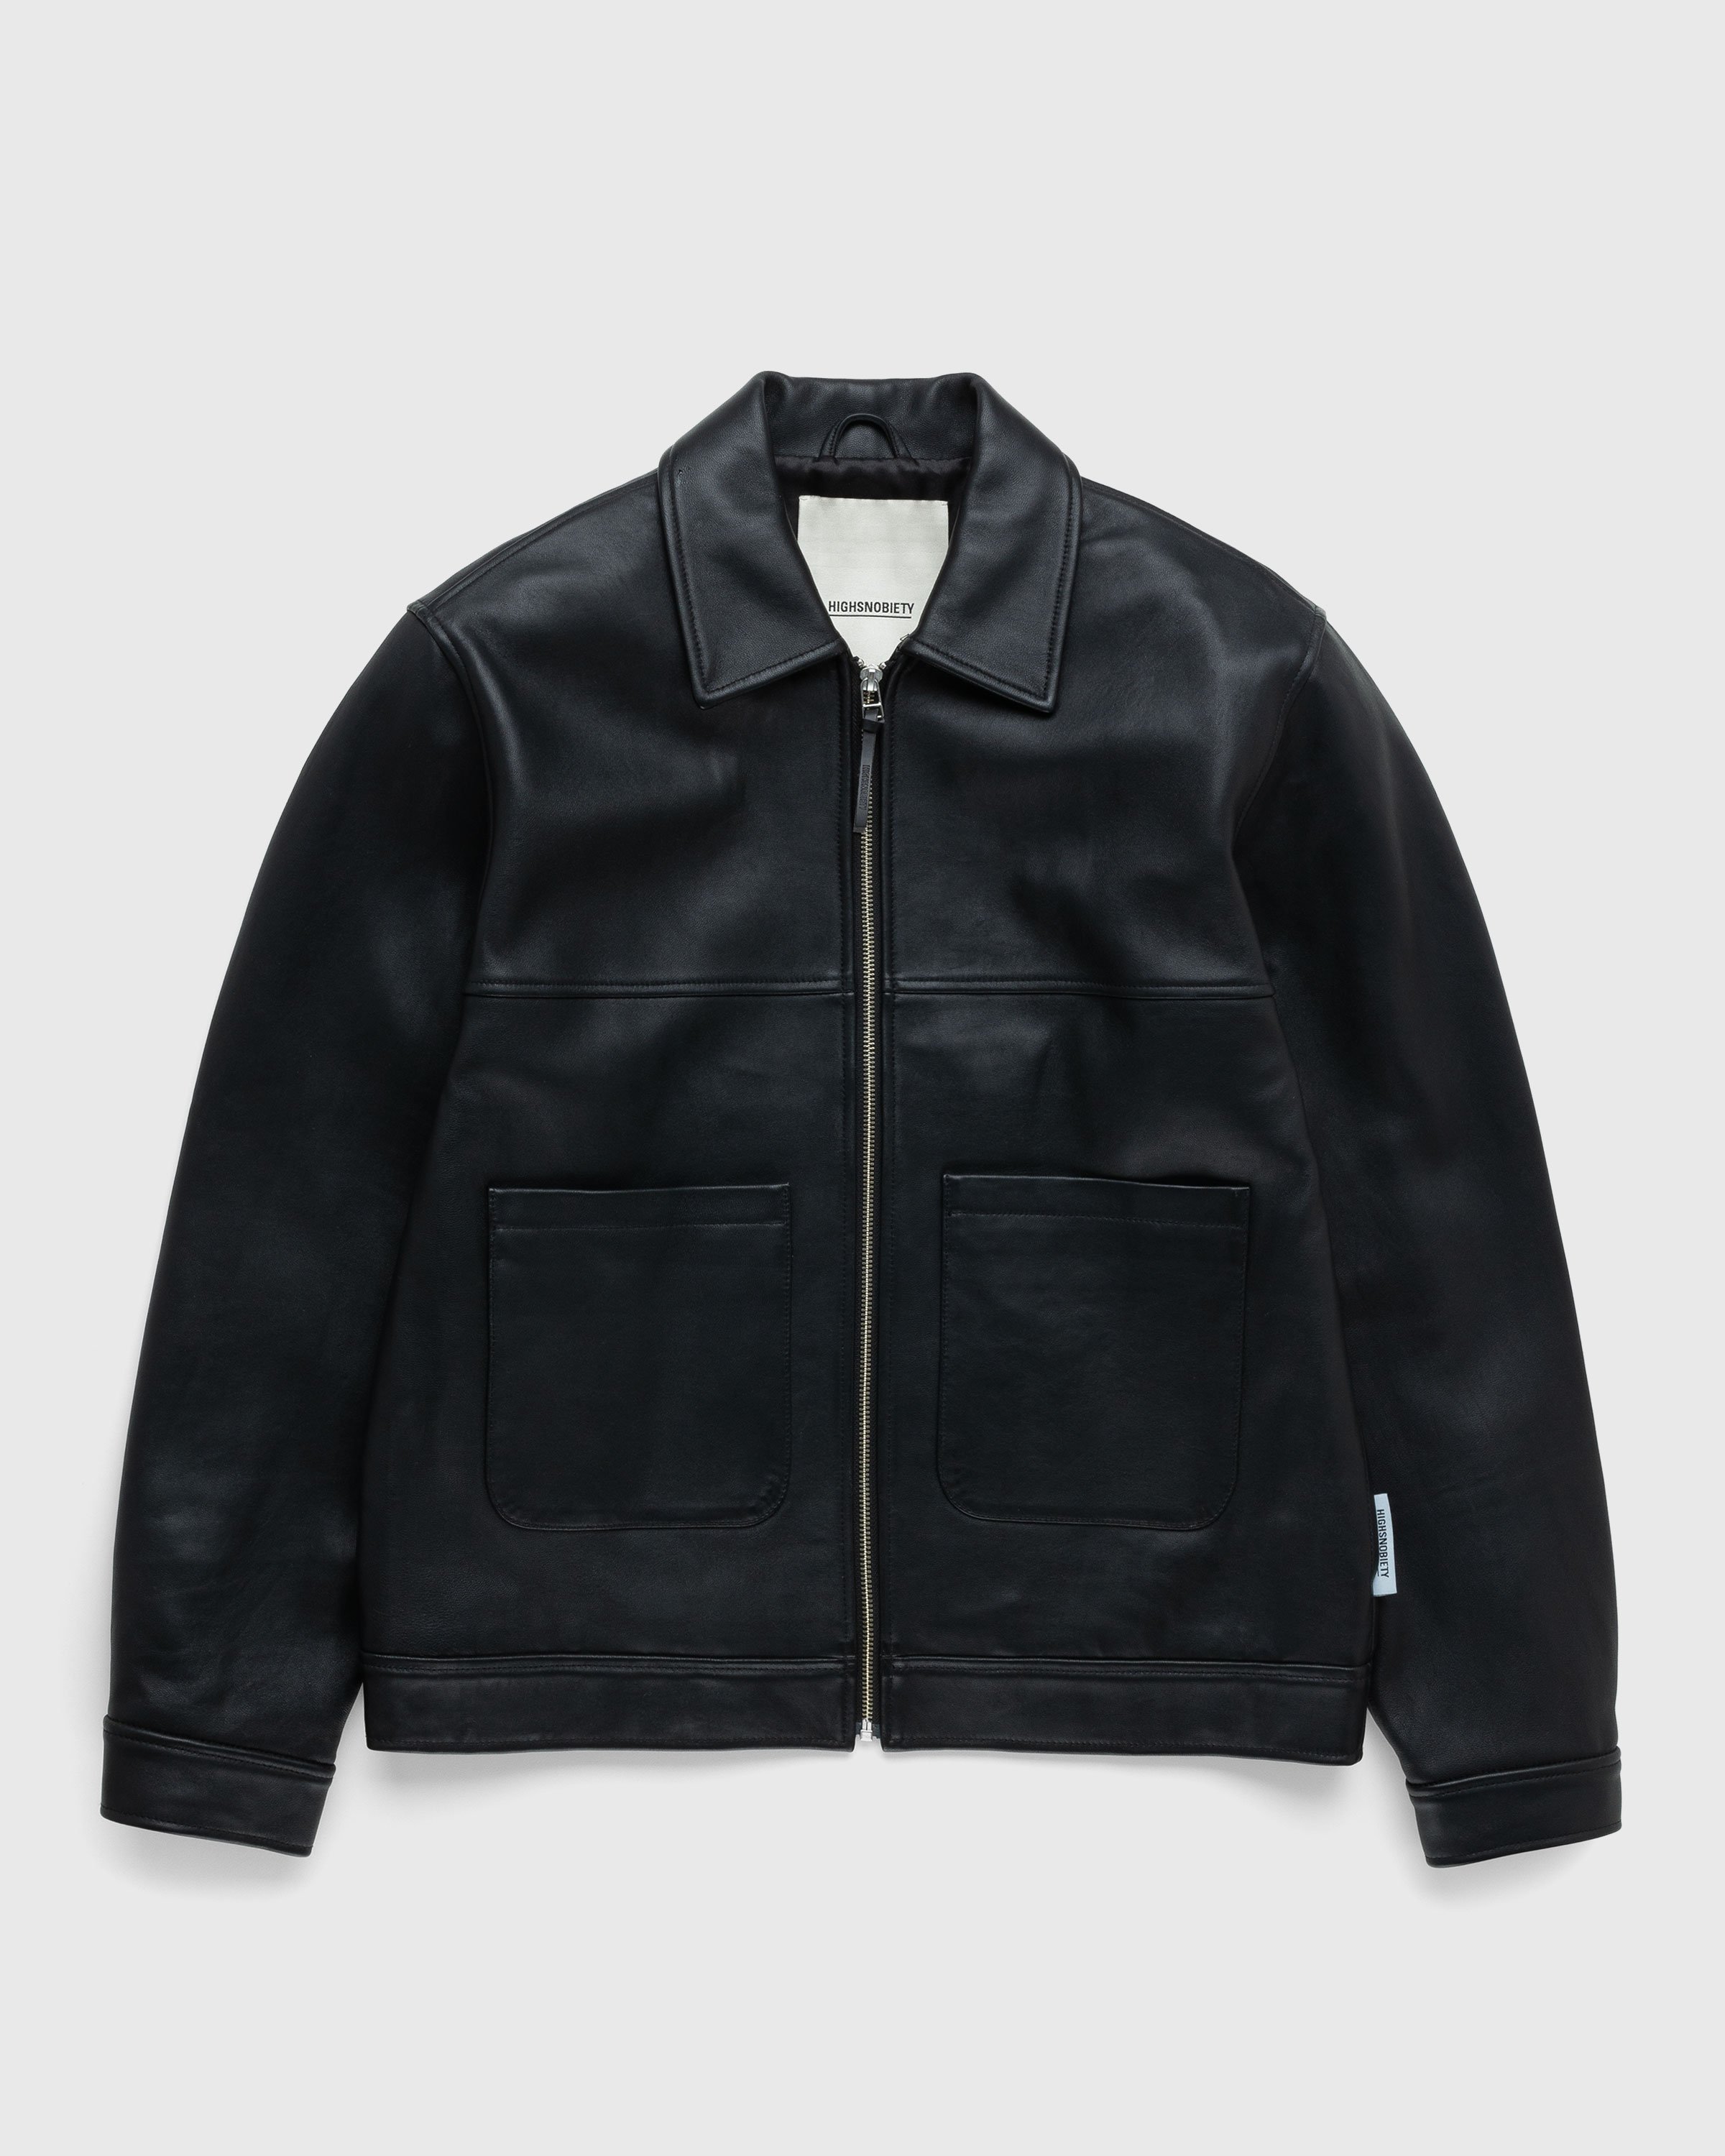 Highsnobiety - Leather Jacket Black - Clothing - Black - Image 1